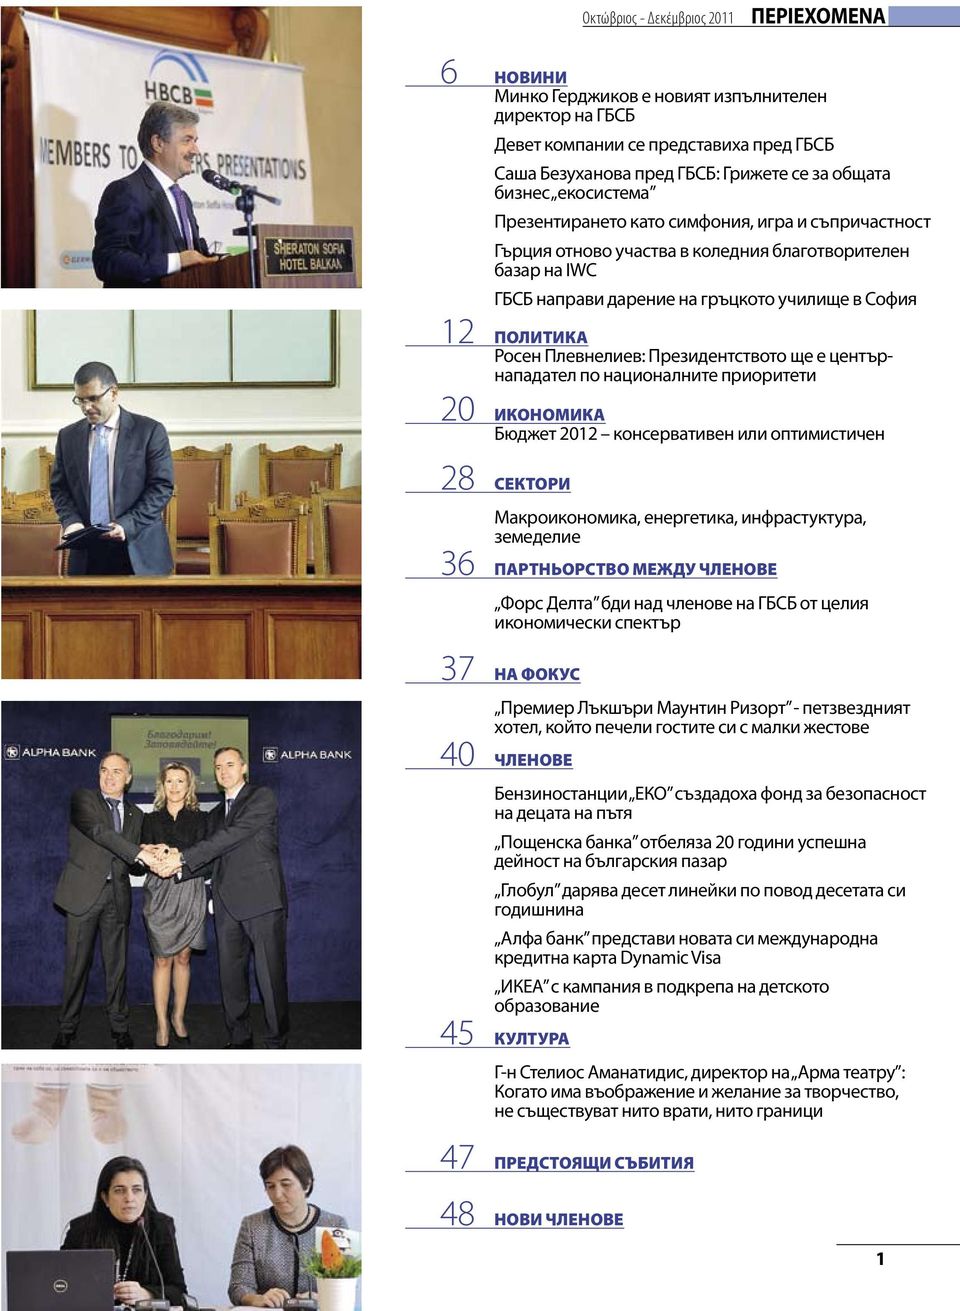 Плевнелиев: Президентството ще е центърнападател по националните приоритети 20 ИКОНОМИКА Бюджет 2012 консервативен или оптимистичен 28 СЕКТОРИ Макроикономика, енергетика, инфрастуктура, земеделие 36